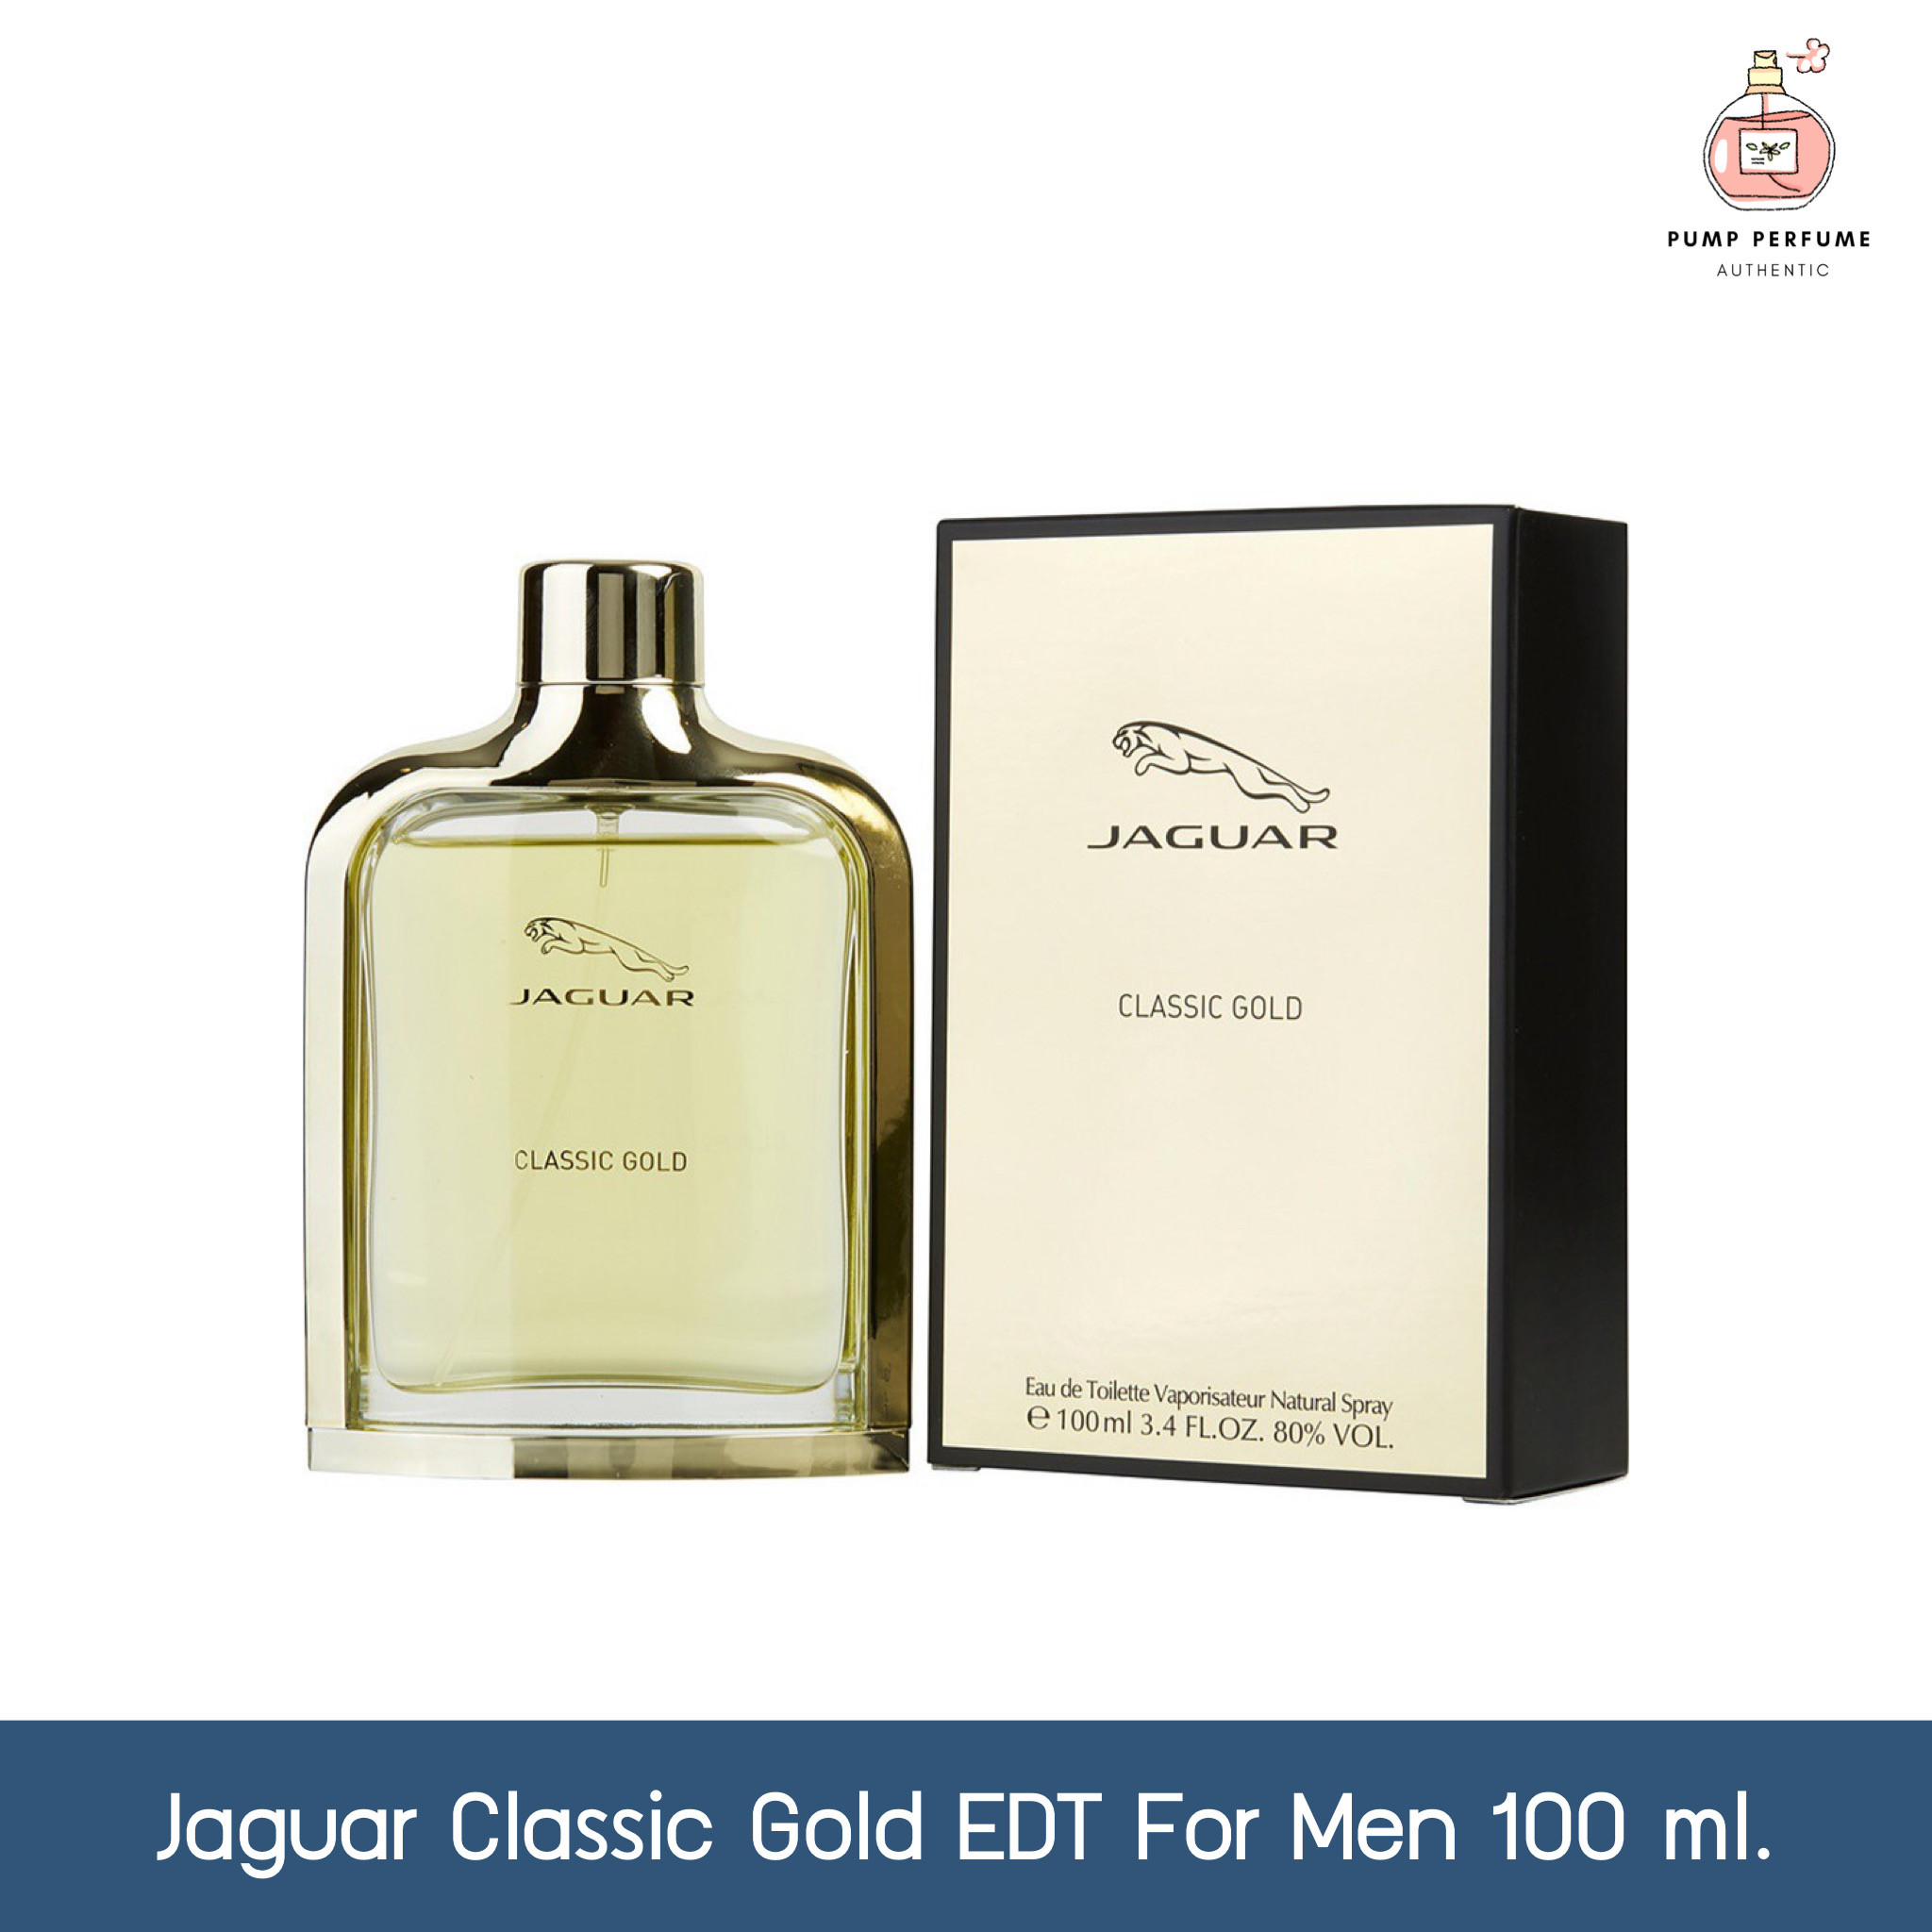 ซื้อที่ไหน น้ำหอมผู้ชาย Jaguar Classic Gold EDT for men 100 ml.